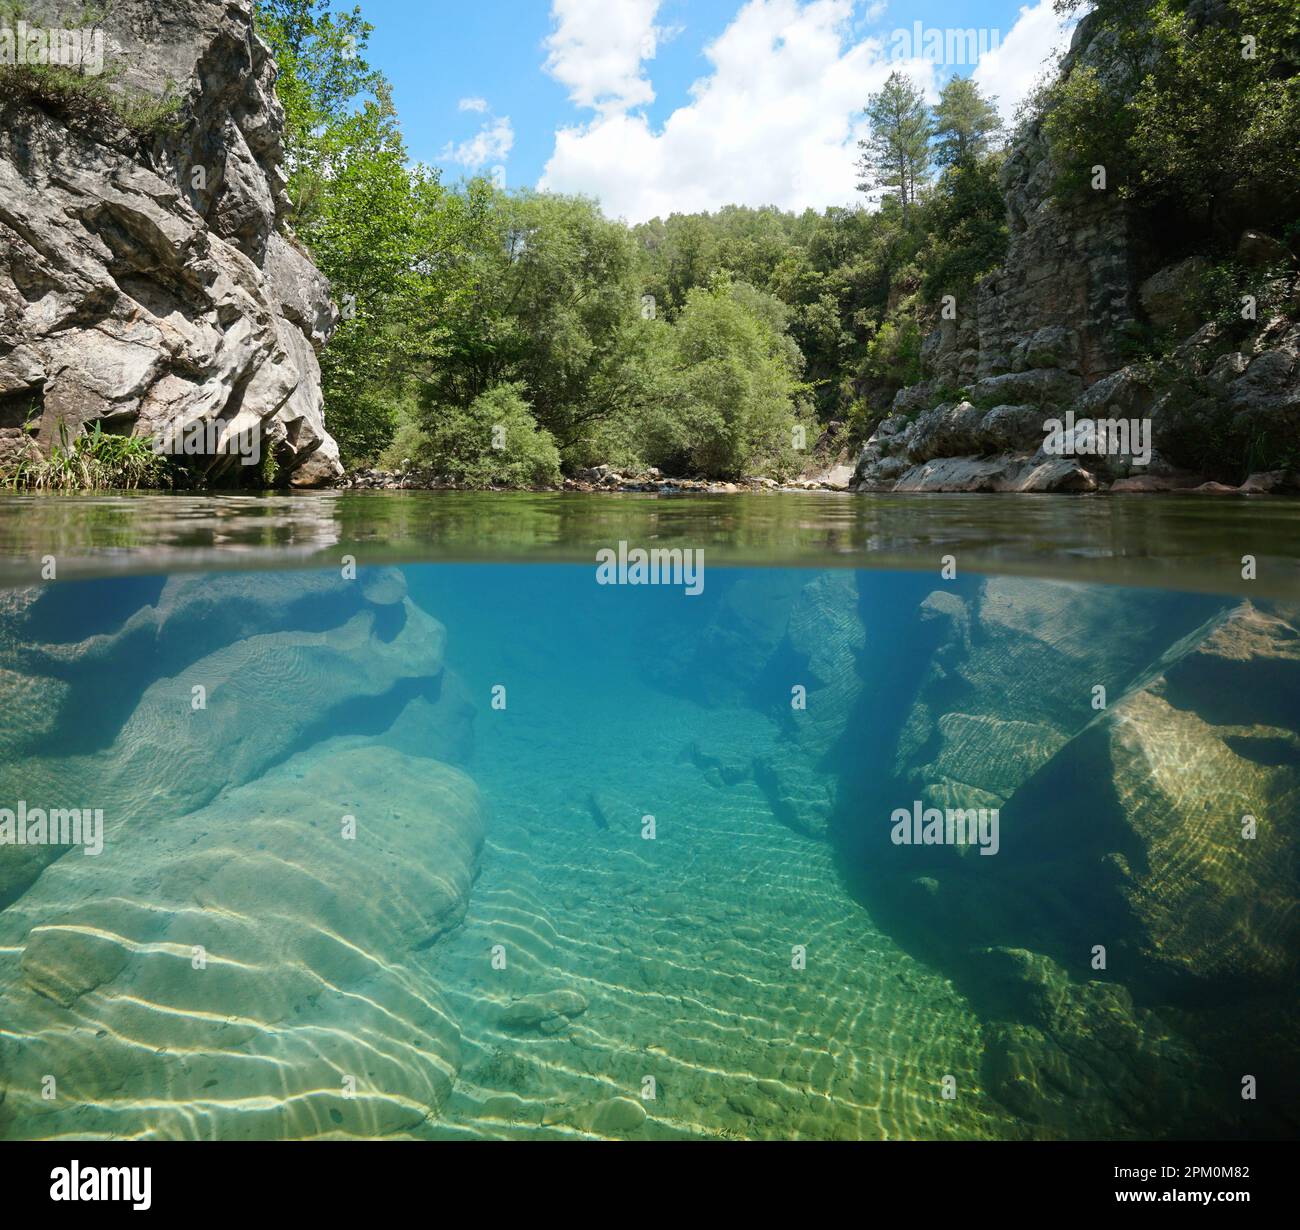 Rivière avec rive rocheuse au-dessus et sous la surface de l'eau, vue sur deux niveaux, Espagne, Catalogne Banque D'Images